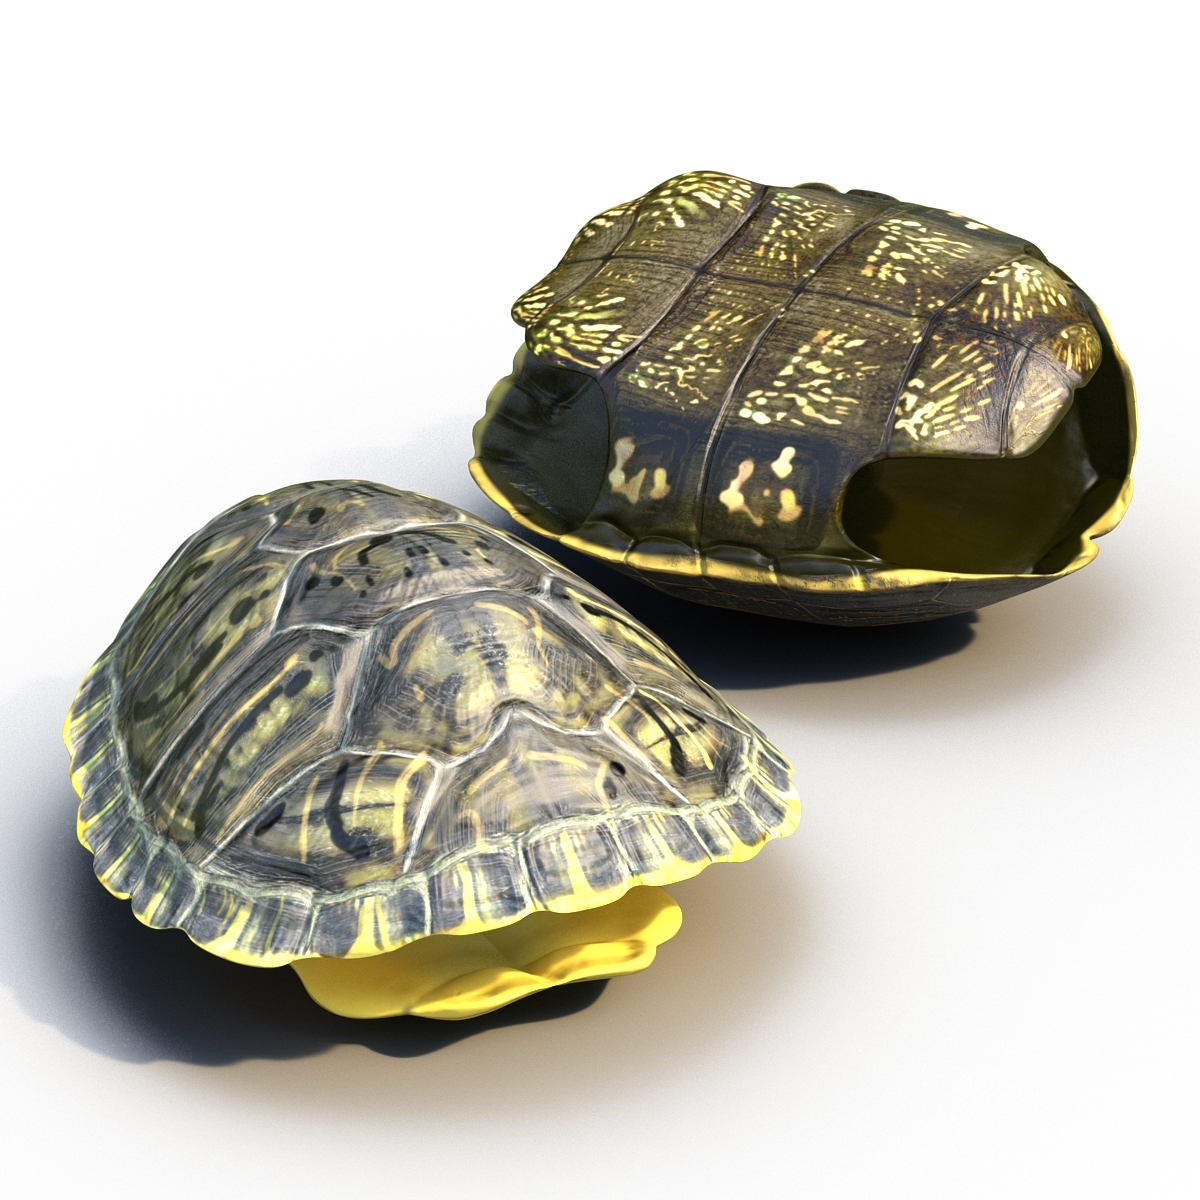 Turtle shell. Робот черепаха панцирь. Панцирь черепахи 3 д модель. Изделия из черепашьего панциря. Изделия из панциря черепахи.